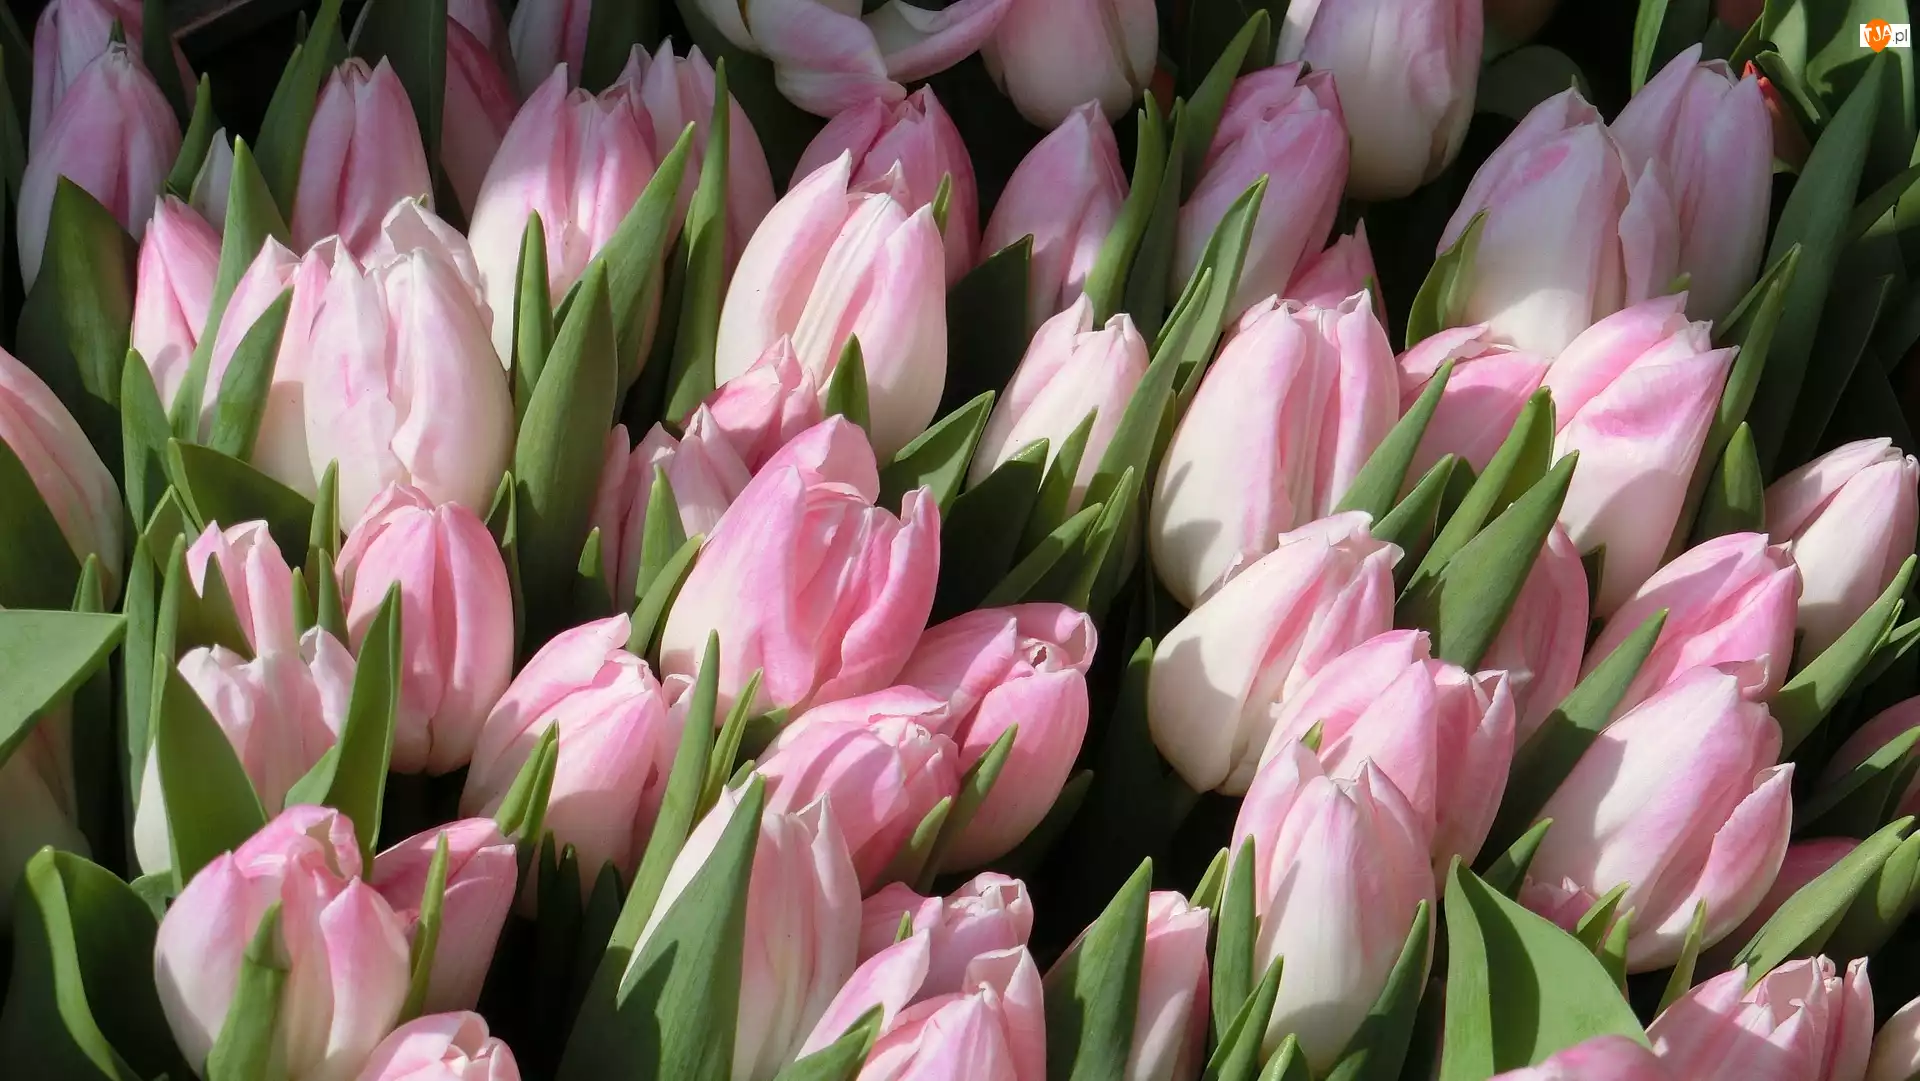 Bladoróżowe, Tulipany